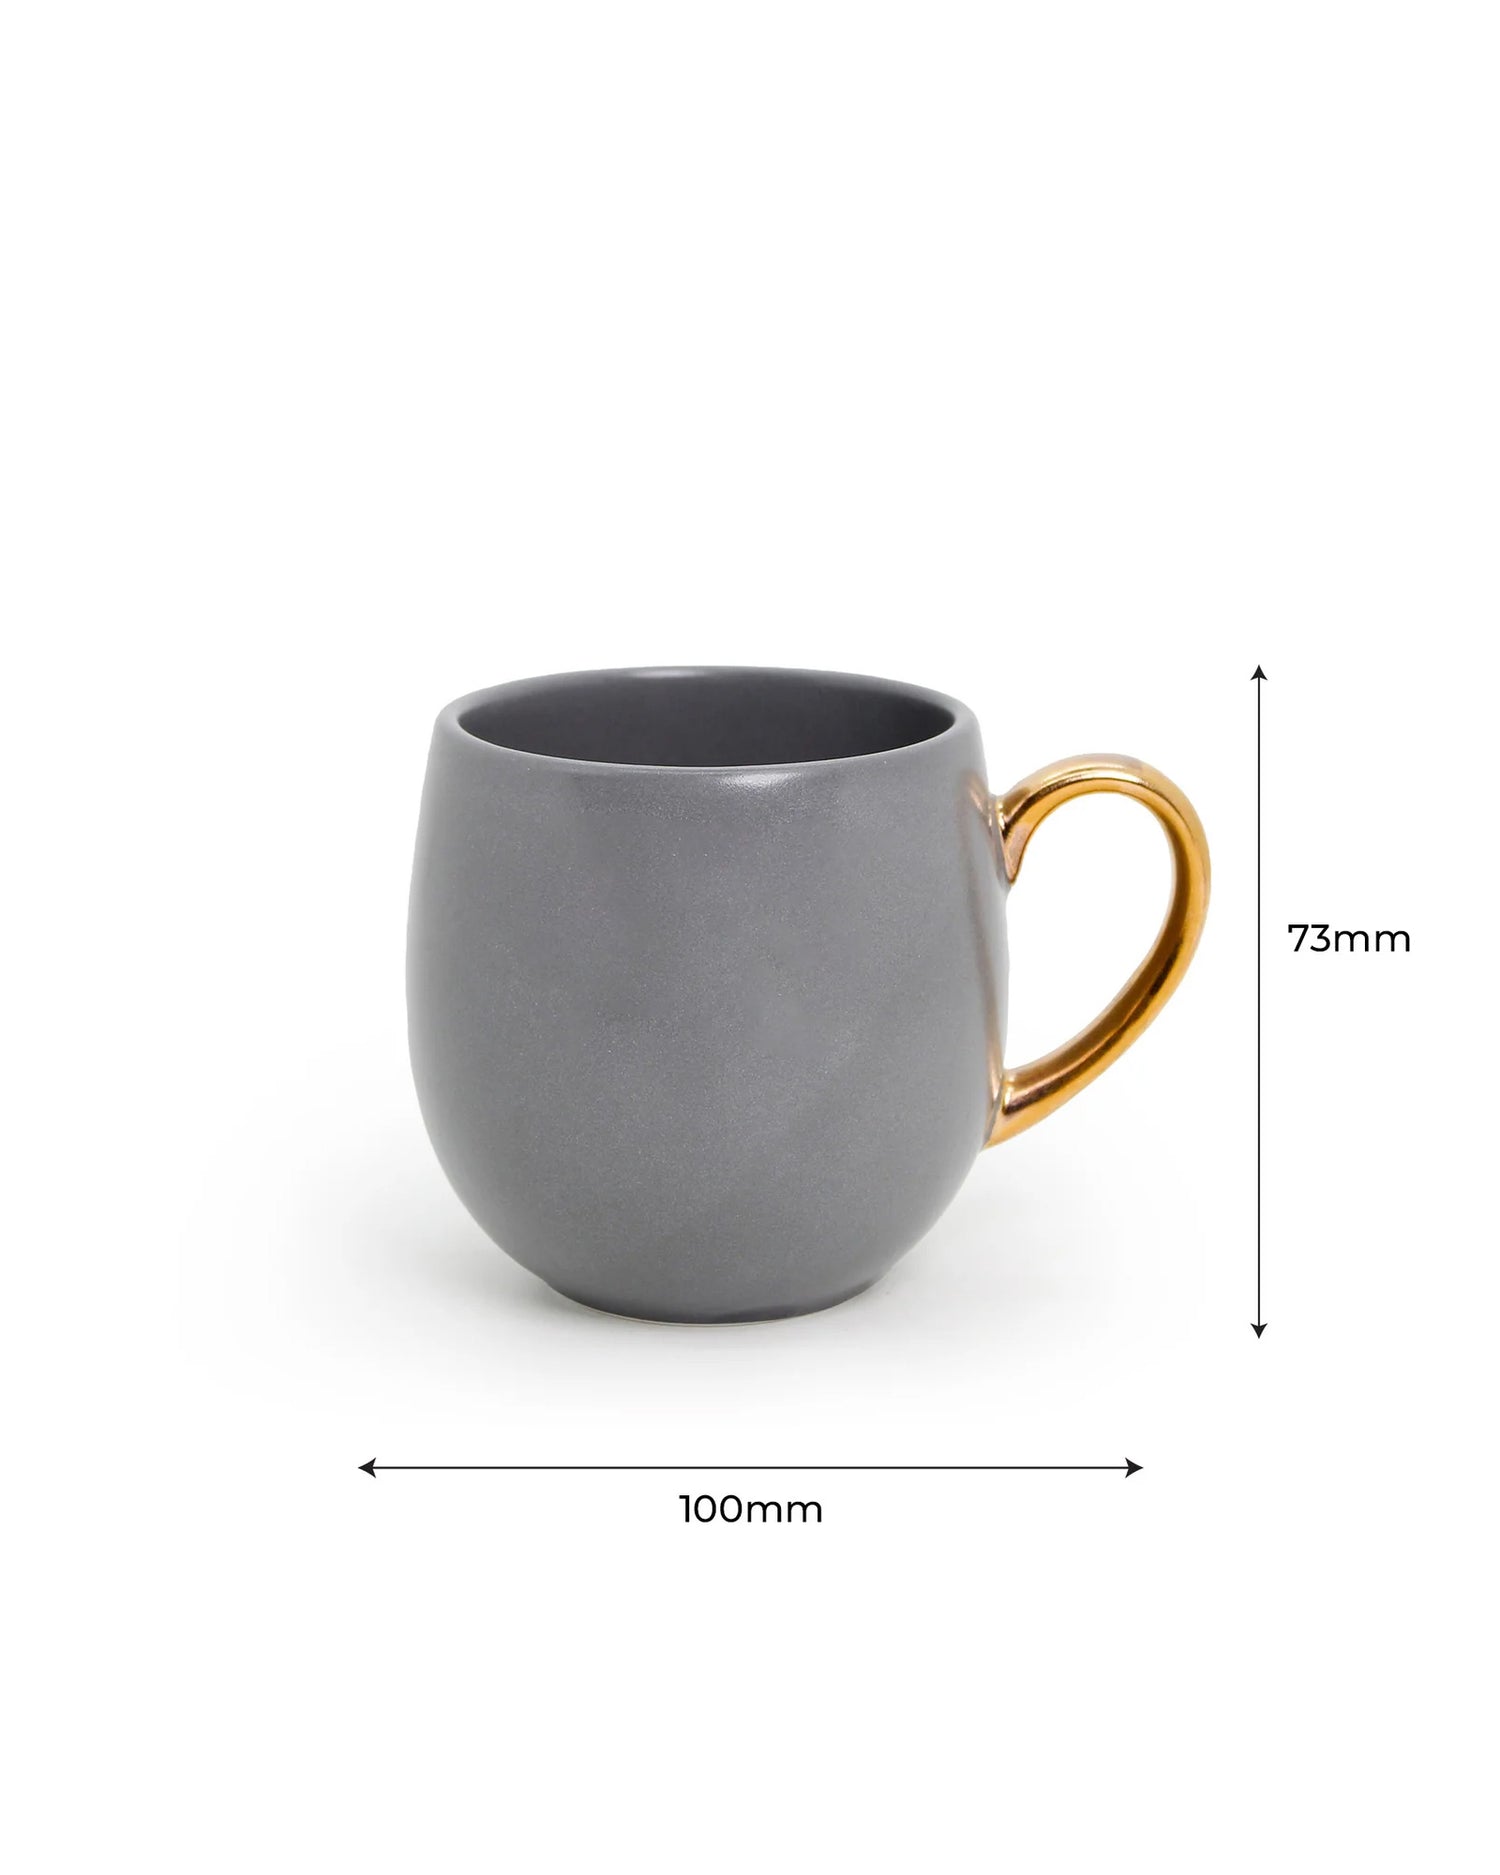 PEBBLE GREY / Set of 2 * 180ml || Bloom luxurious Tea Mug | Golden handle